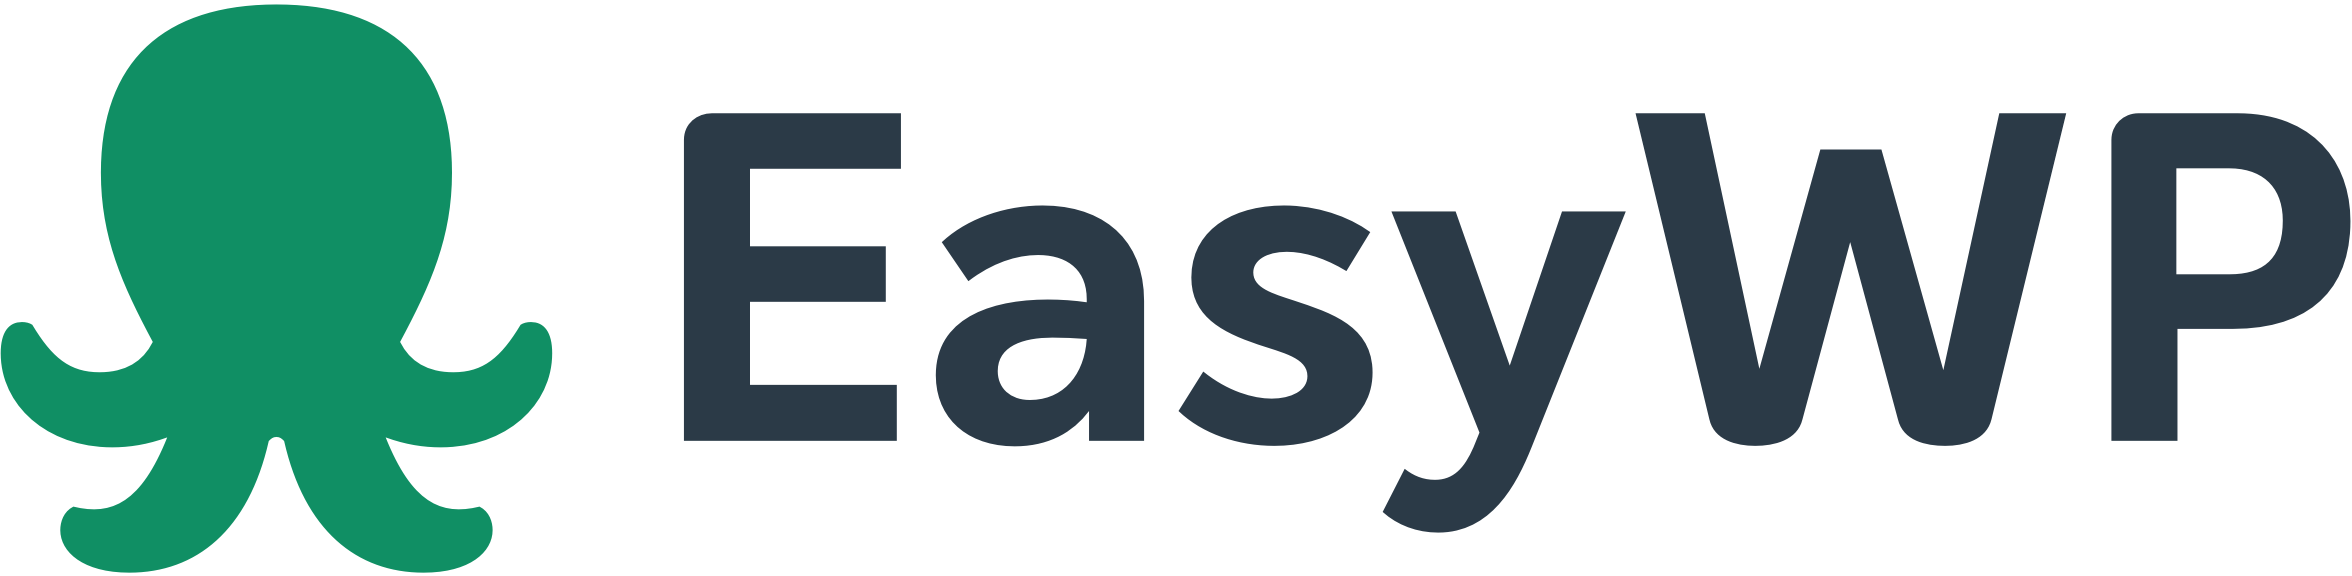 Easy WP Logo